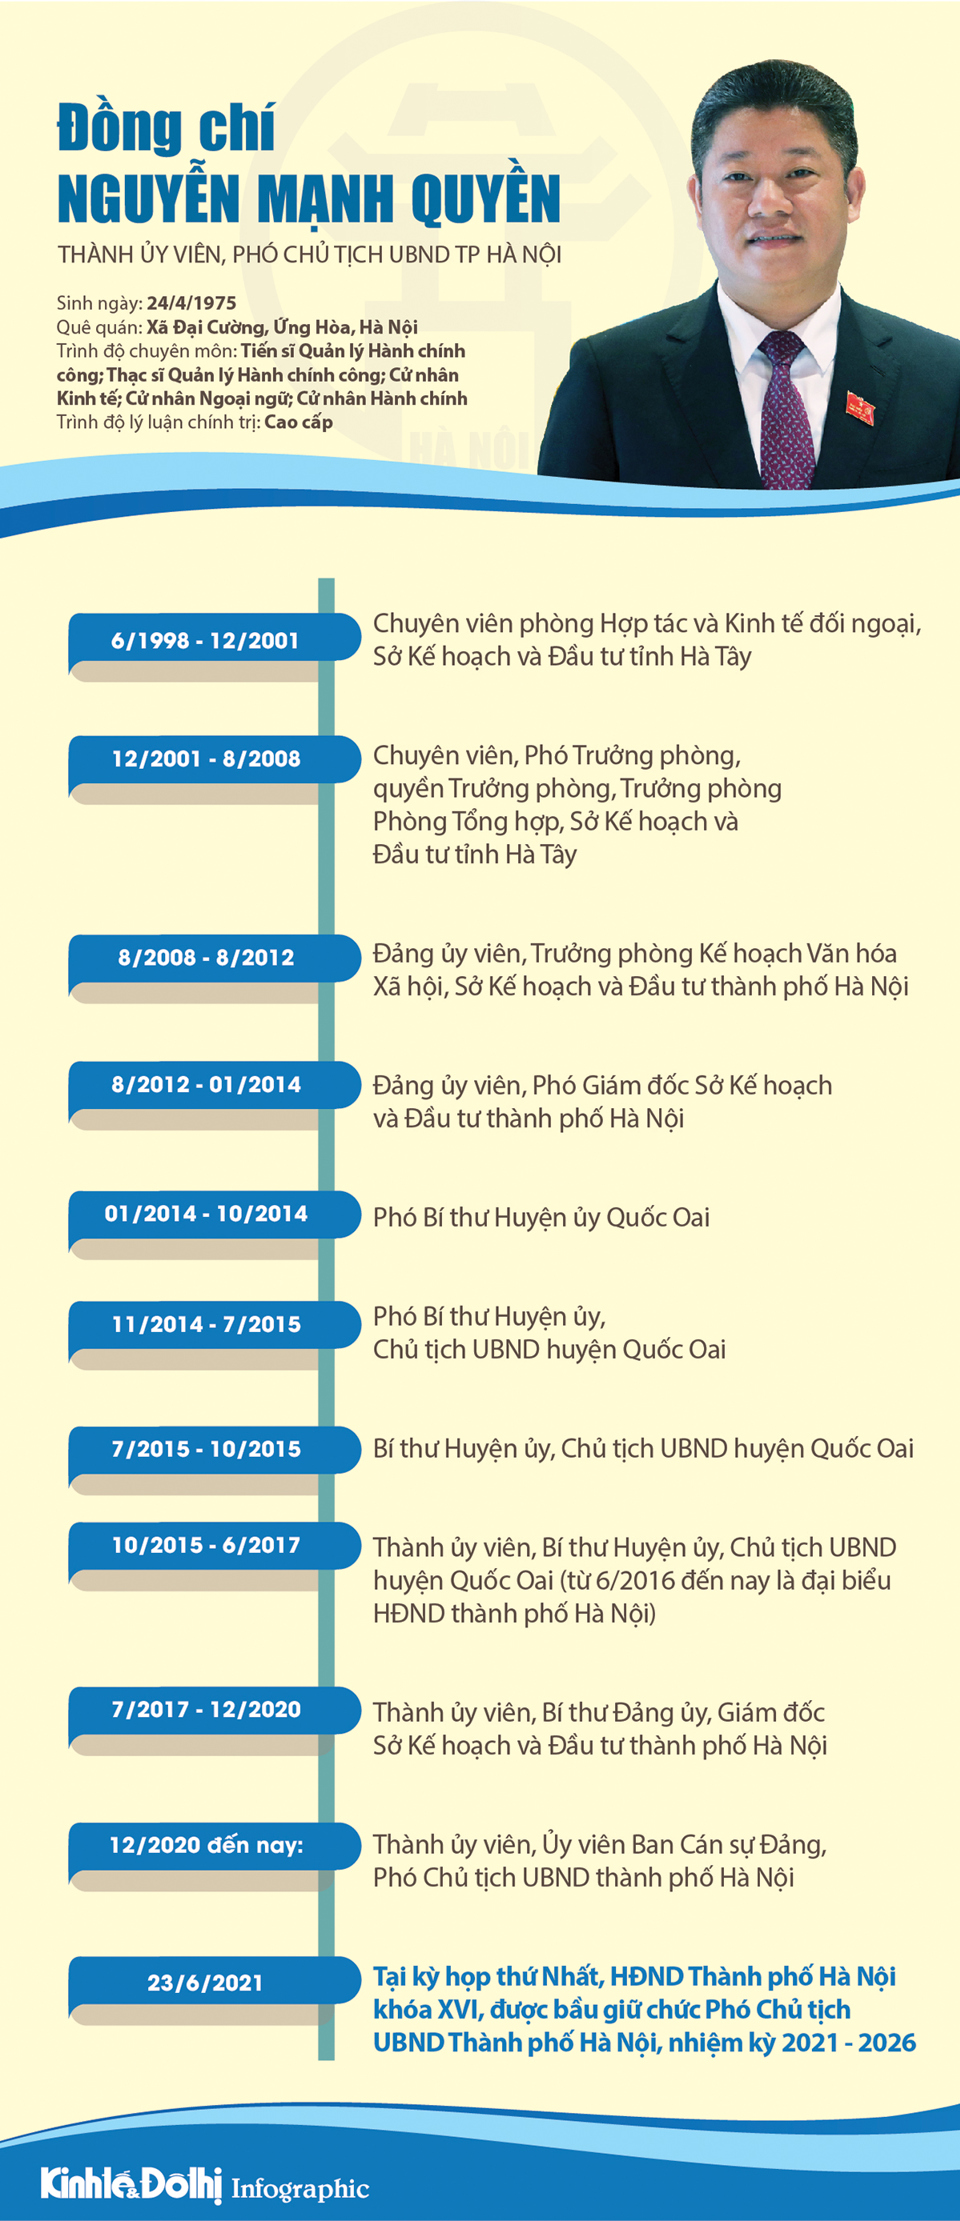 [Infographic] Chân dung Phó Chủ tịch UBND TP Hà Nội Nguyễn Mạnh Quyền - Ảnh 1